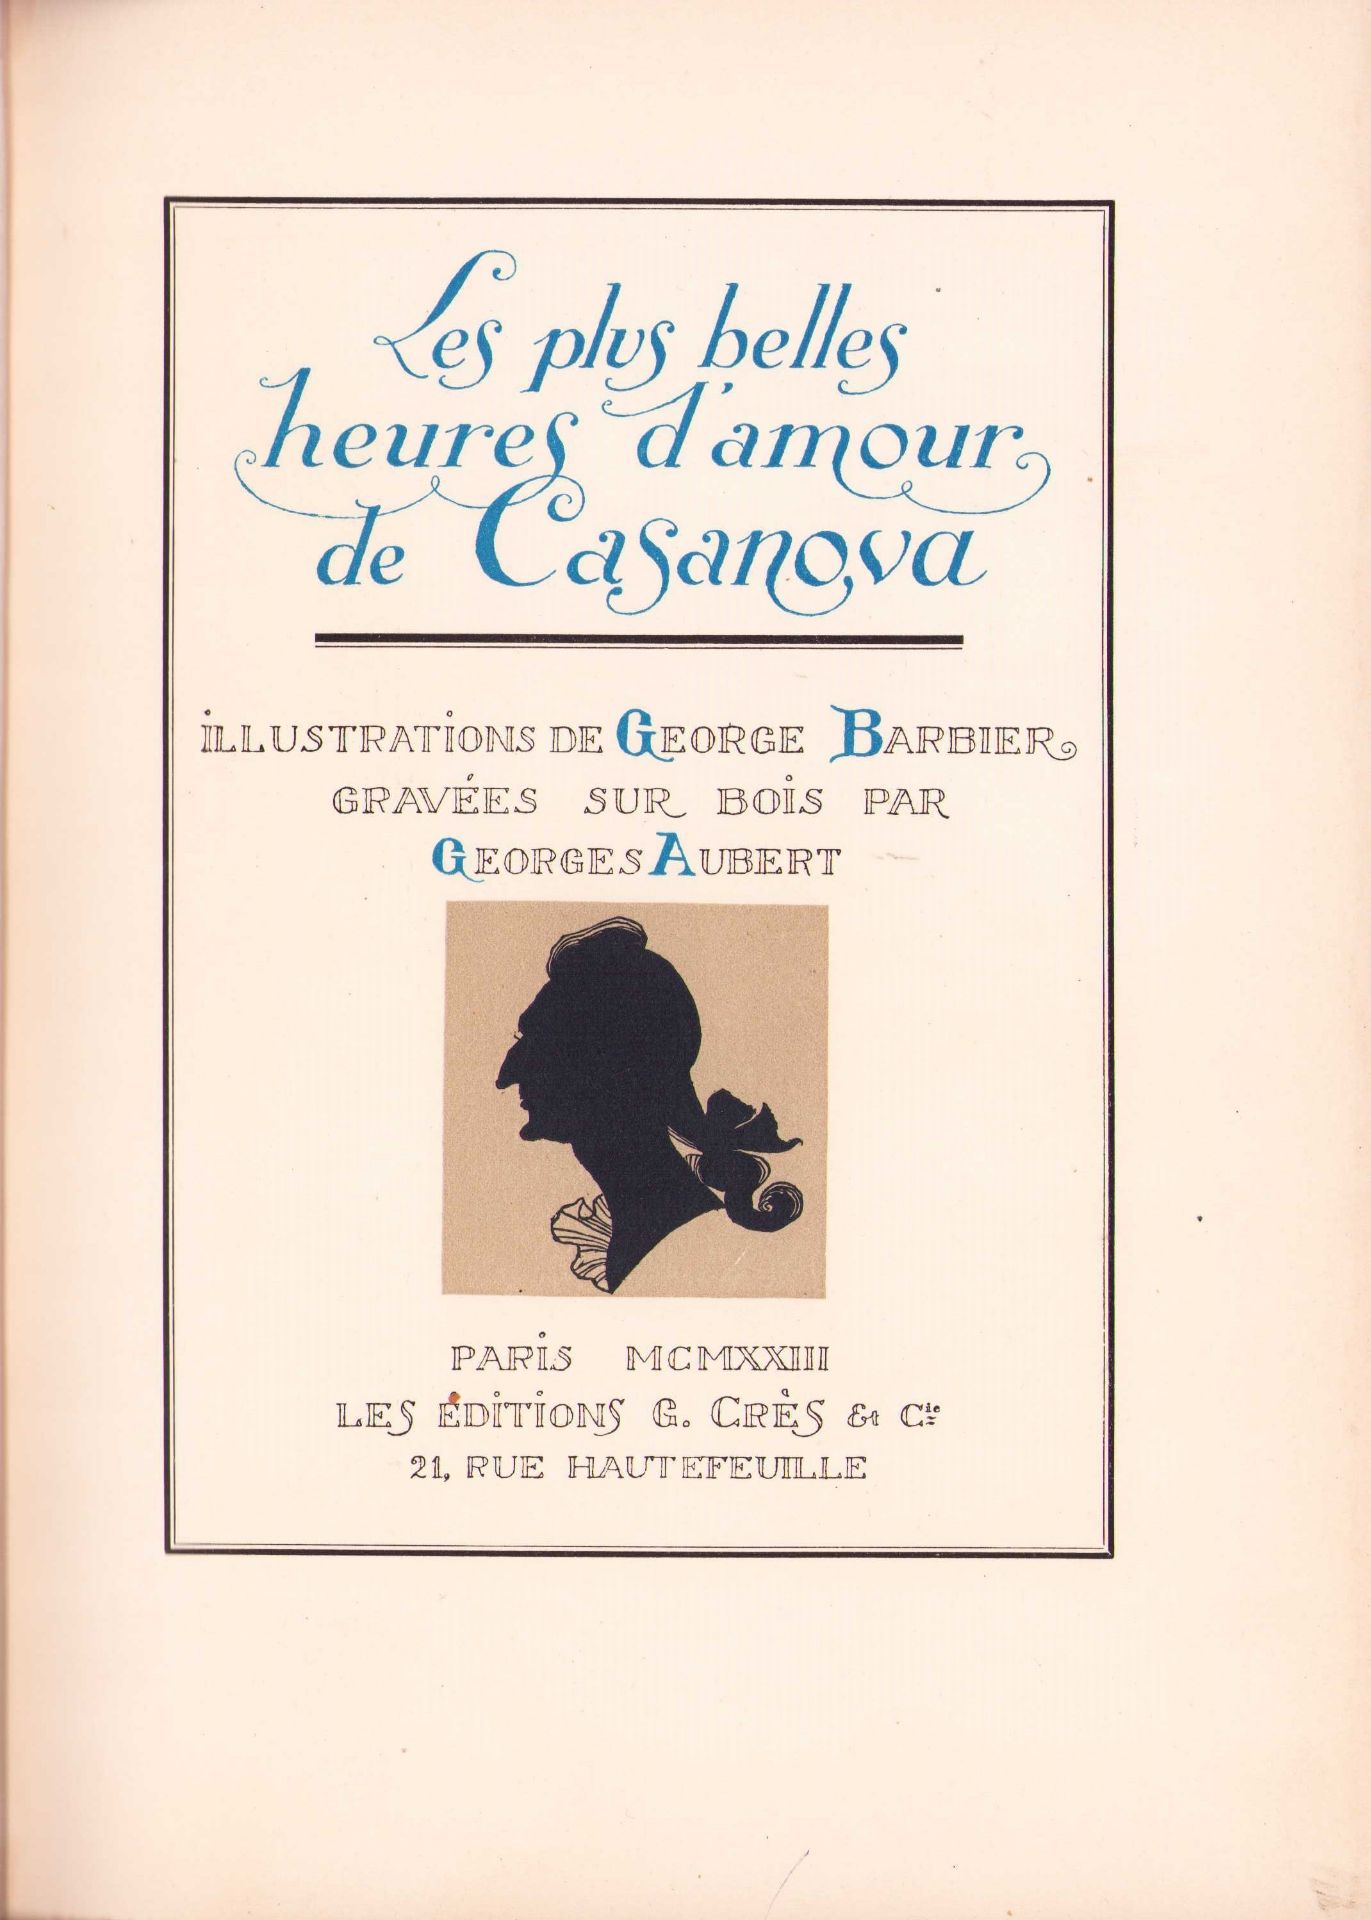 |Illustré| Georges Barbier, "Les plus belles heures d'amour de Casanova", 1923. Les Editions G. Crès - Image 5 of 13